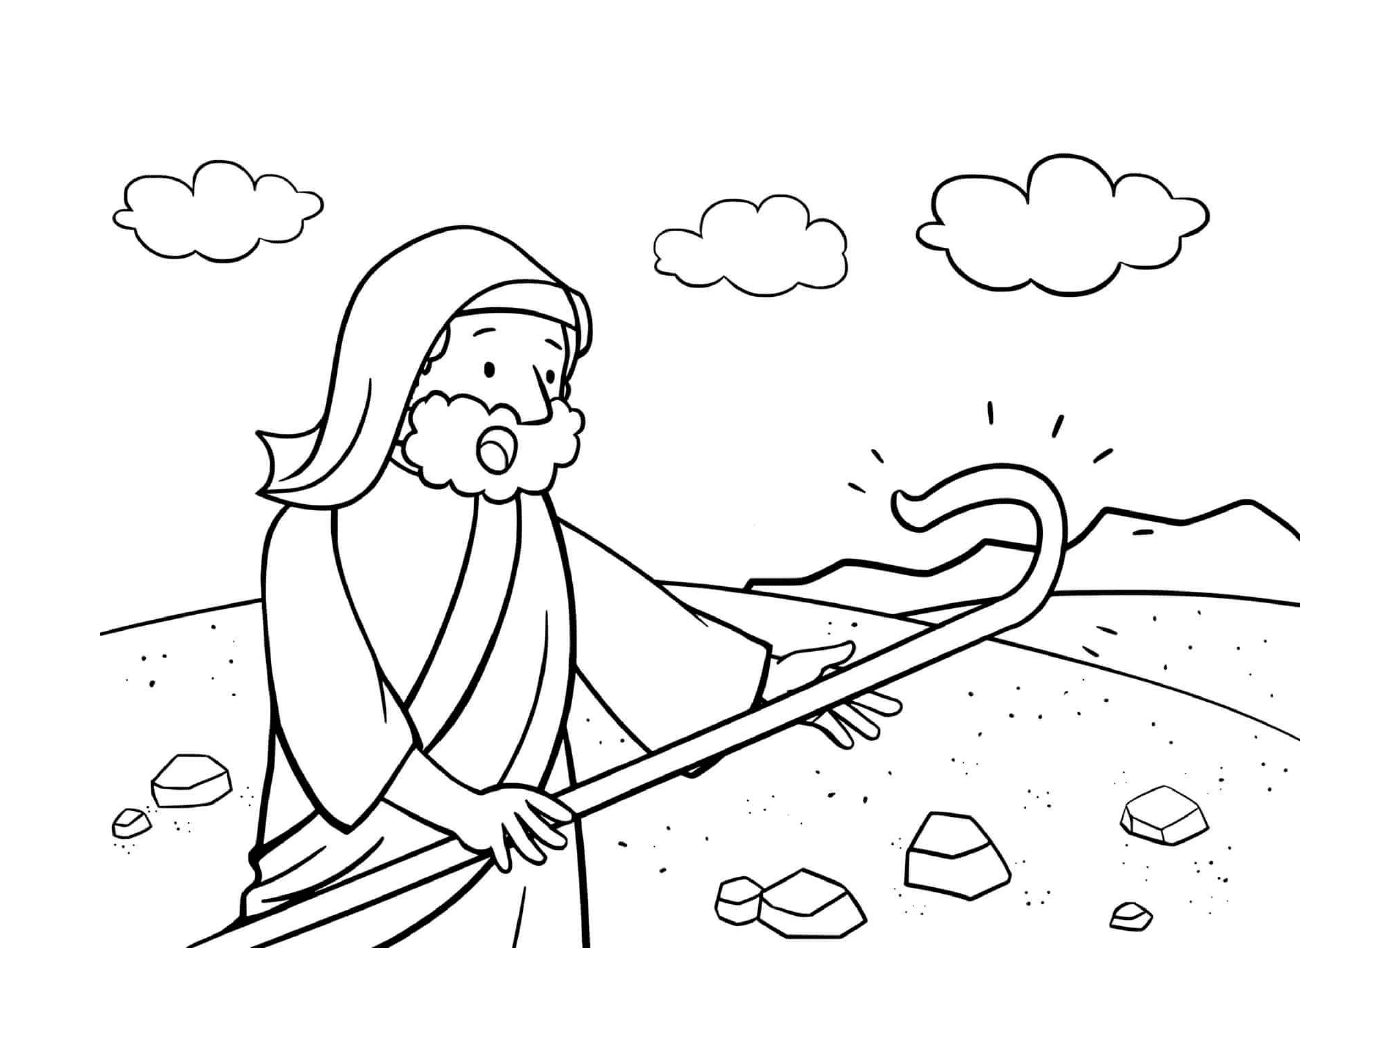  Duda de Moisés, hombre sosteniendo un palo 